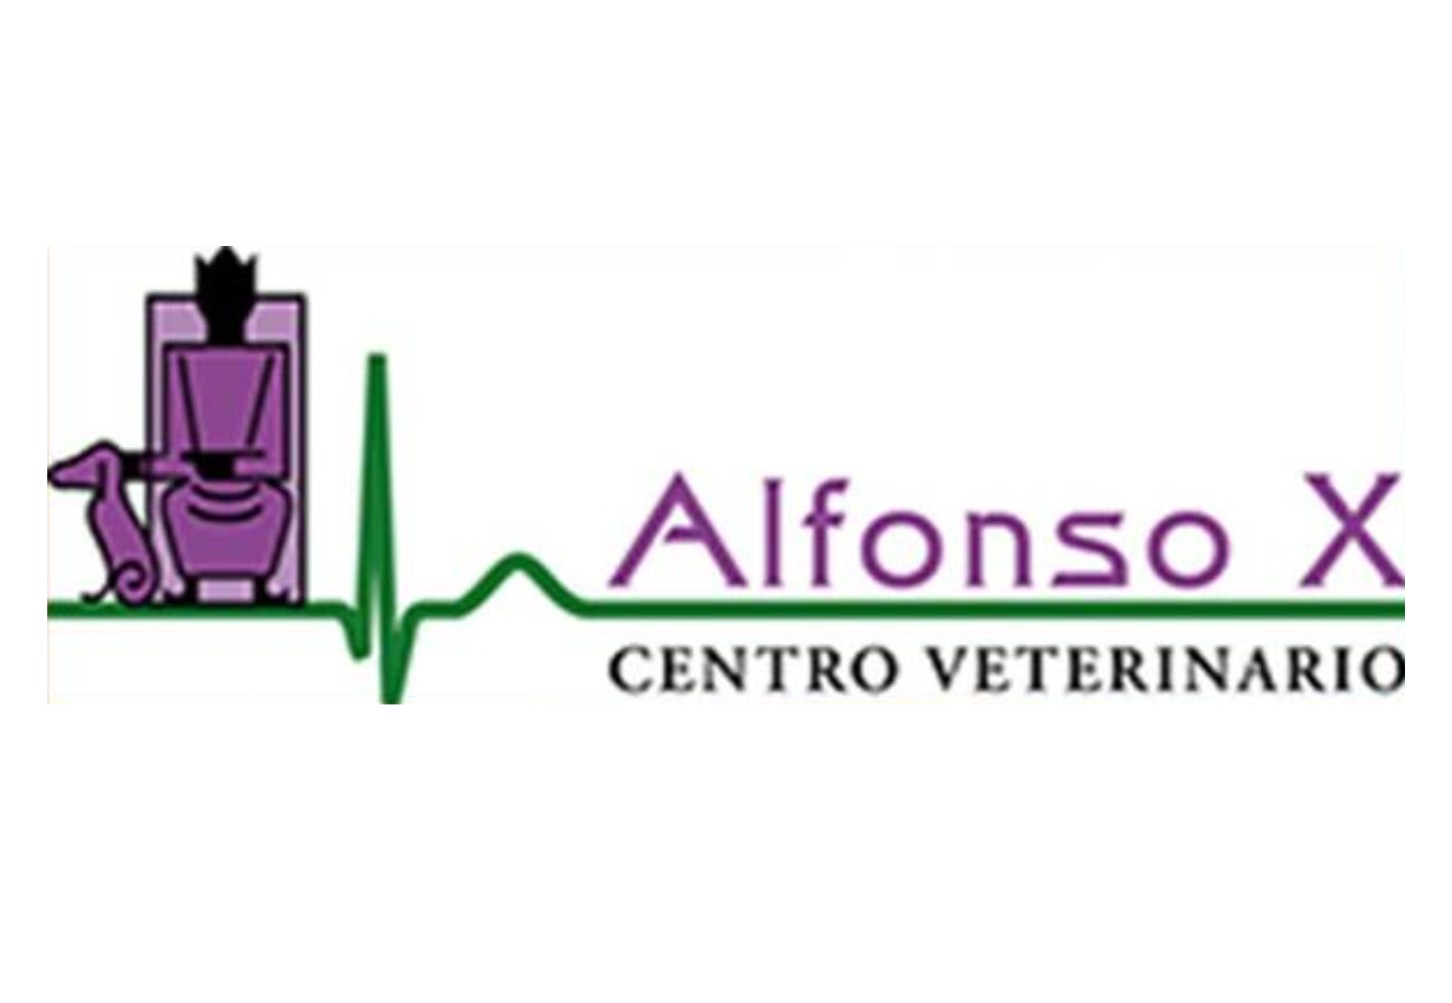 Logo clínica Alfonso X